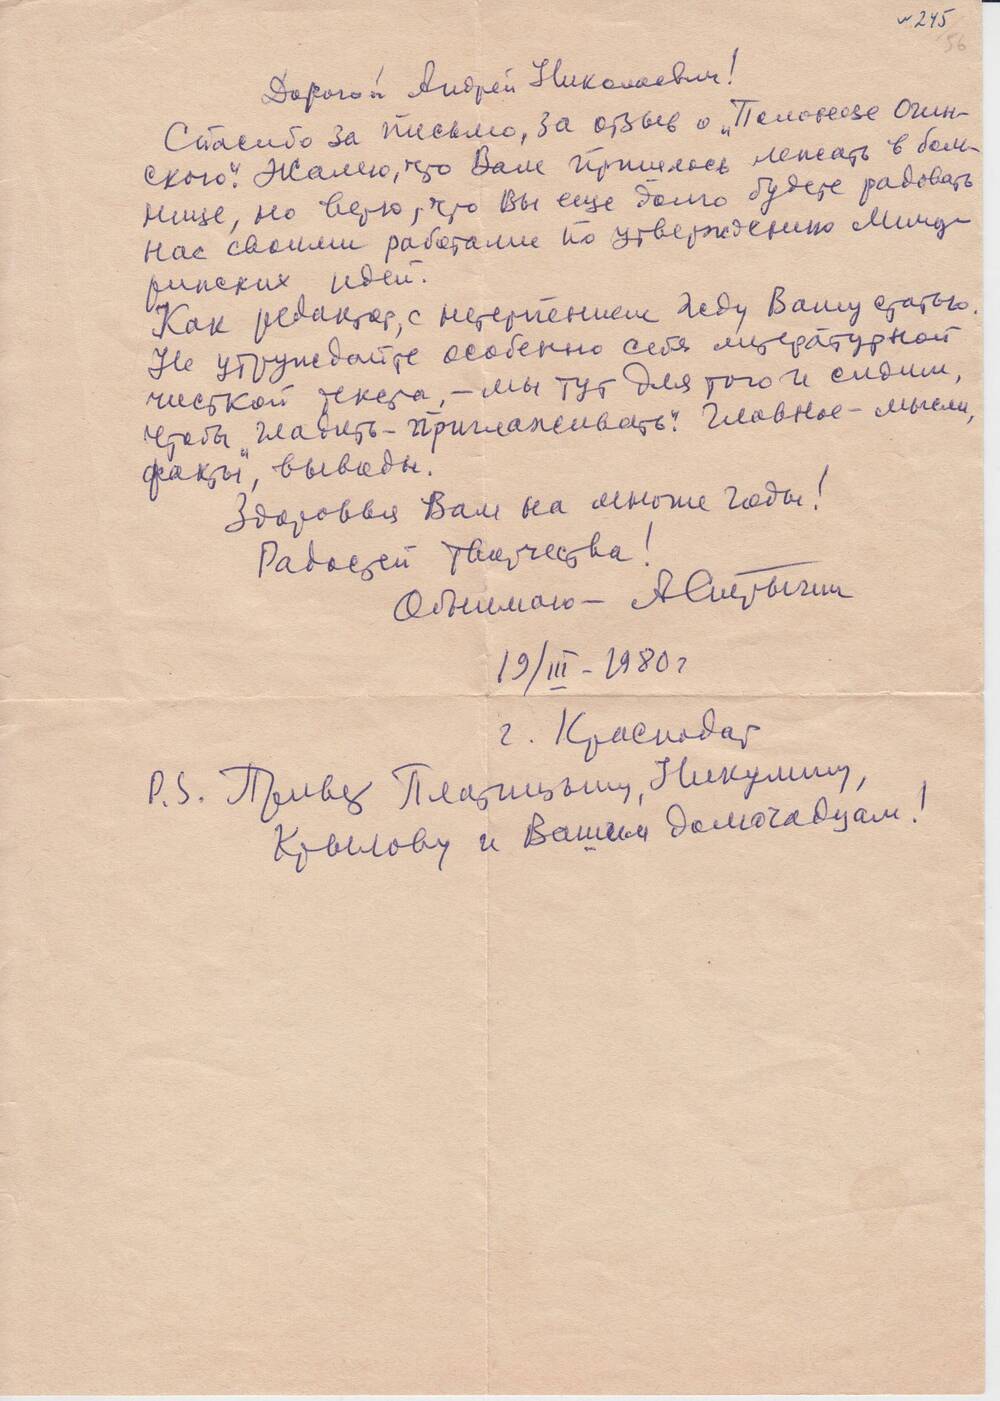 Письмо А. В. Стрыгина А. Н. Бахареву от 19/III 1980 г.